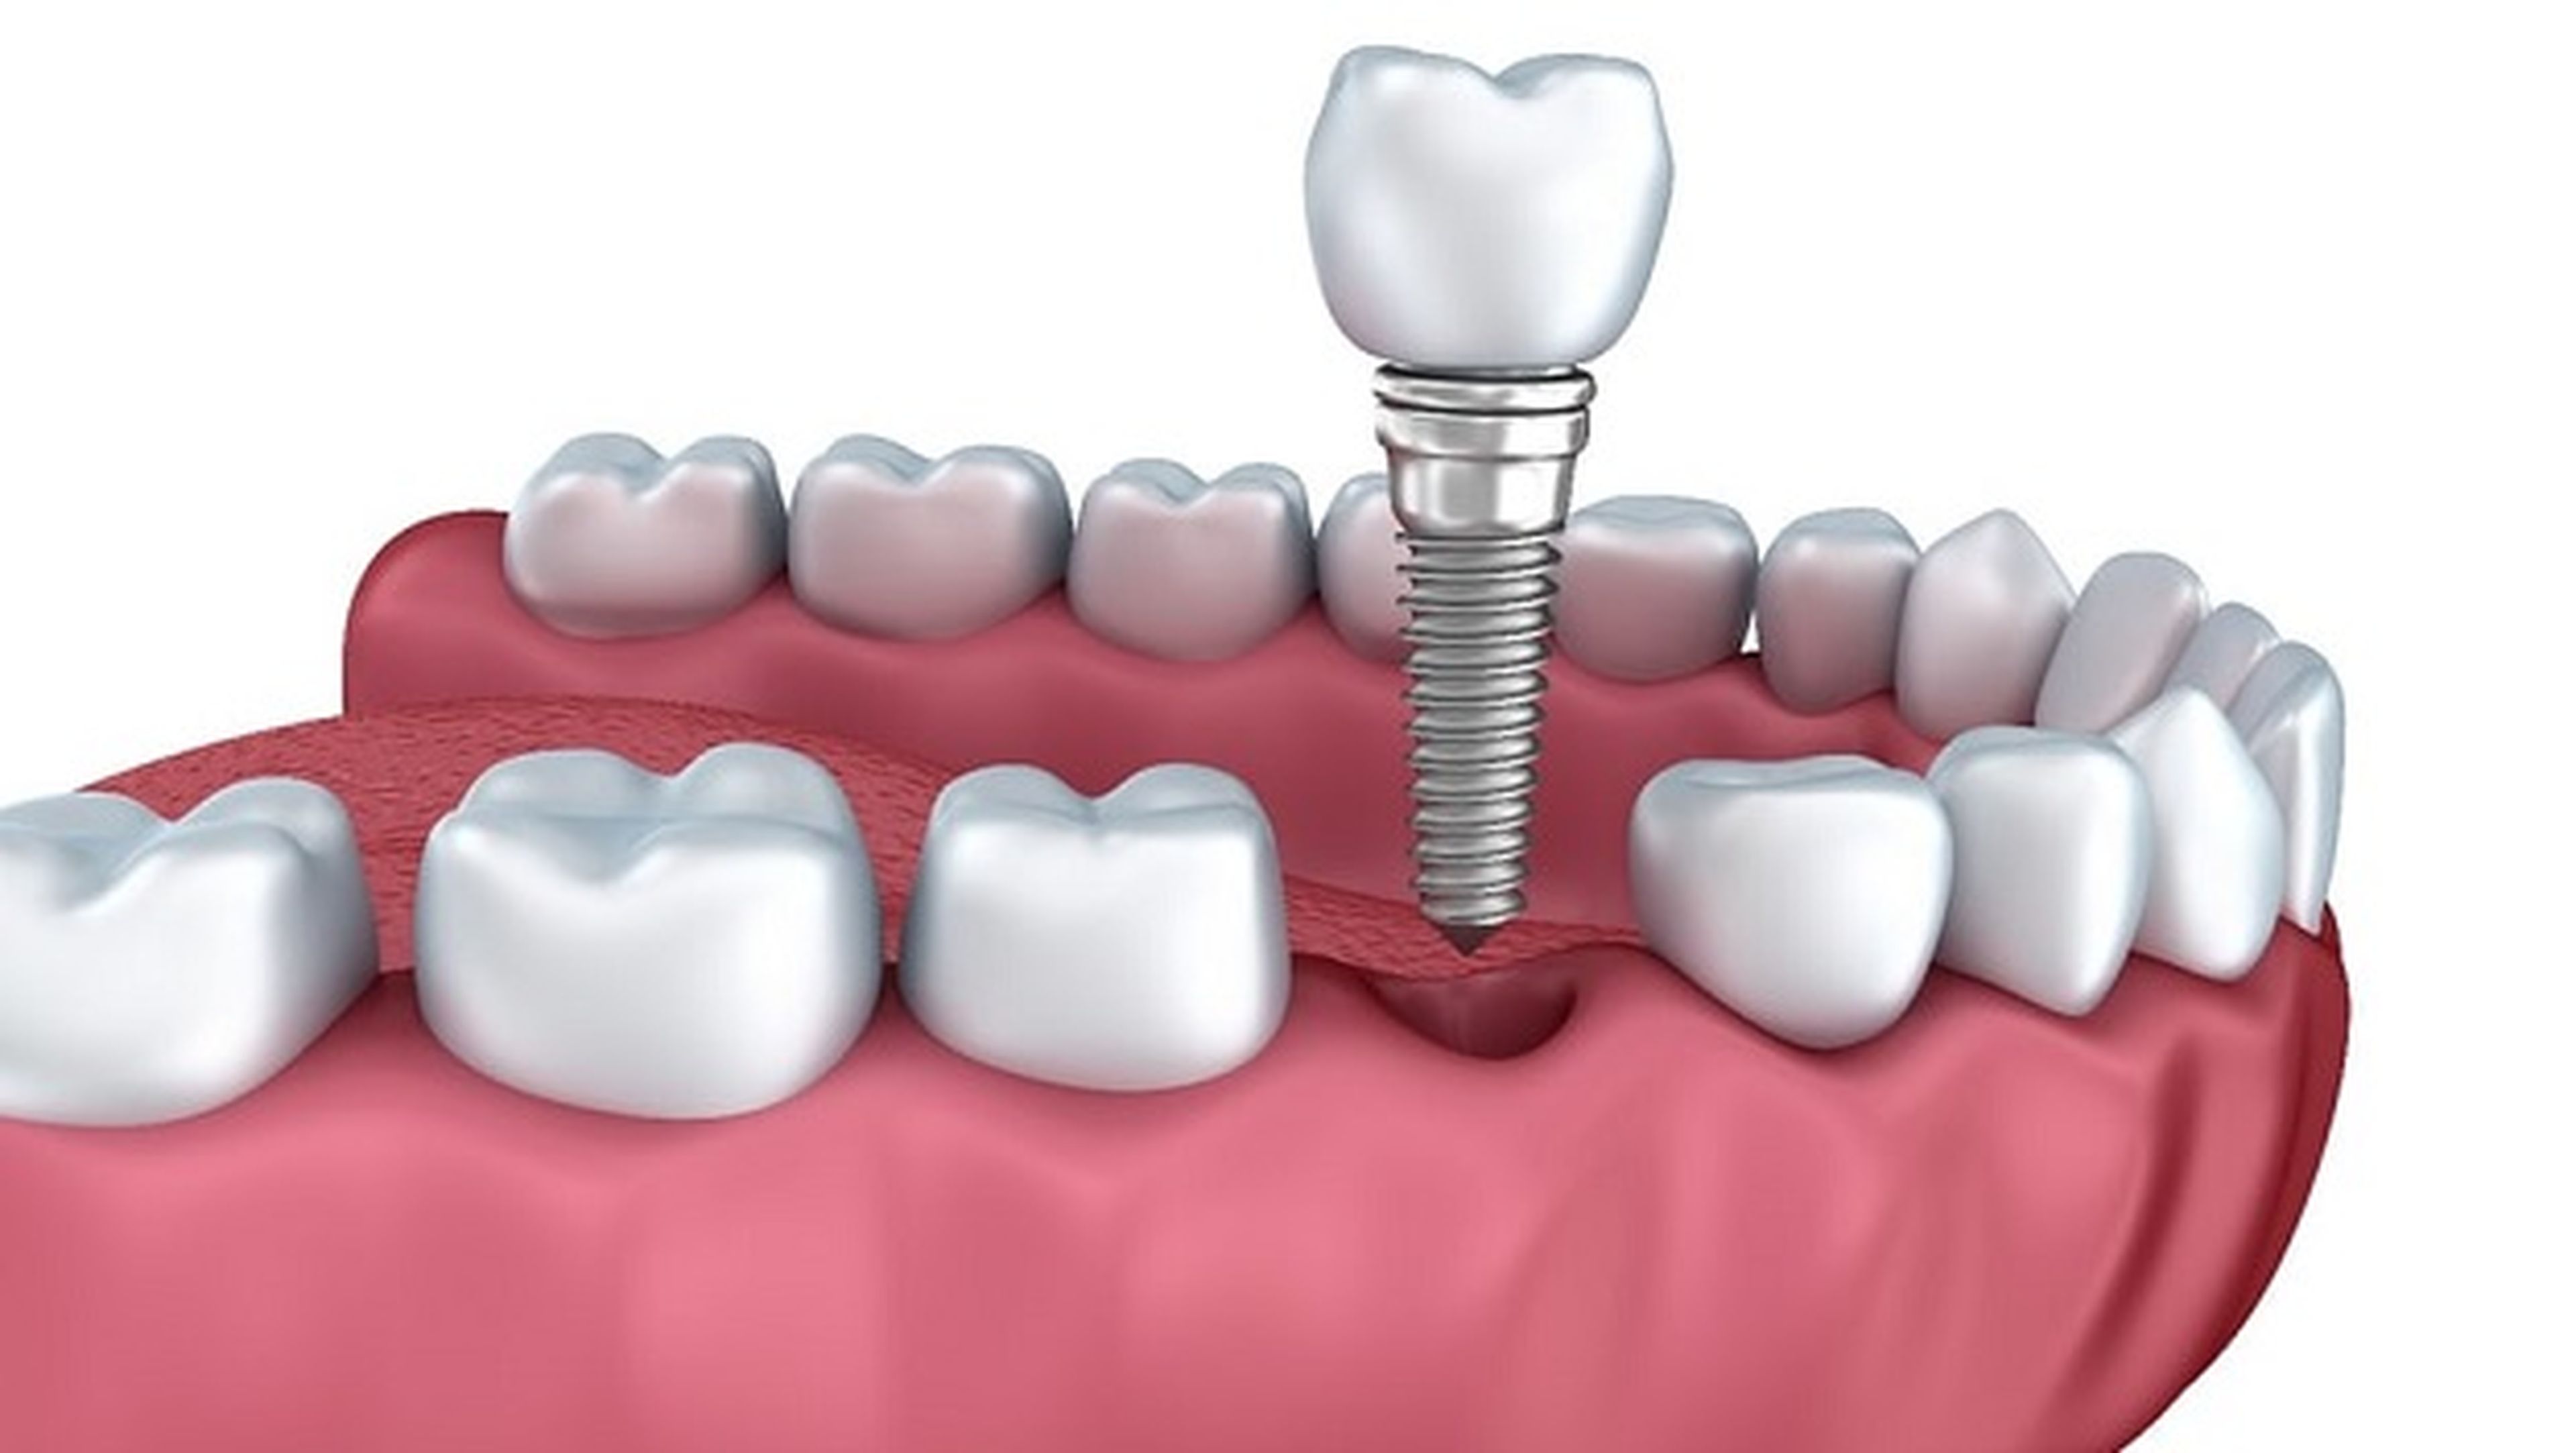 Nuevo revestimiento de implantes dentales combate infecciones